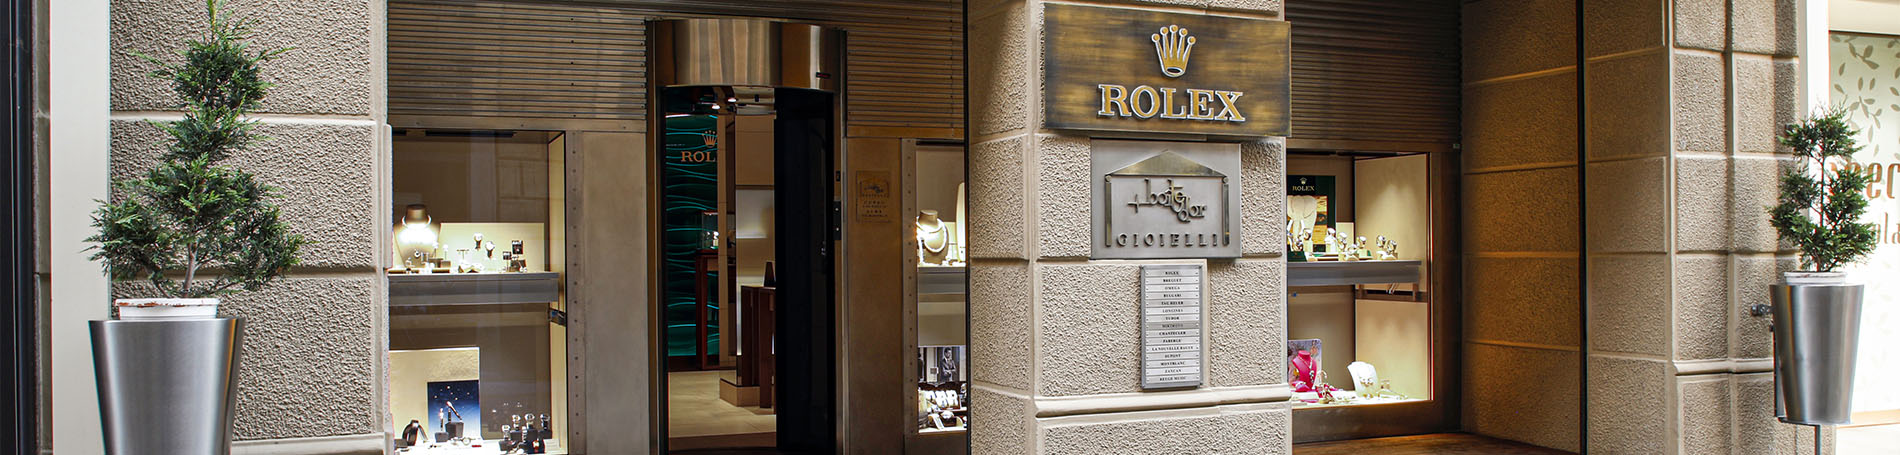 Rolex - Boite d'Or Alba